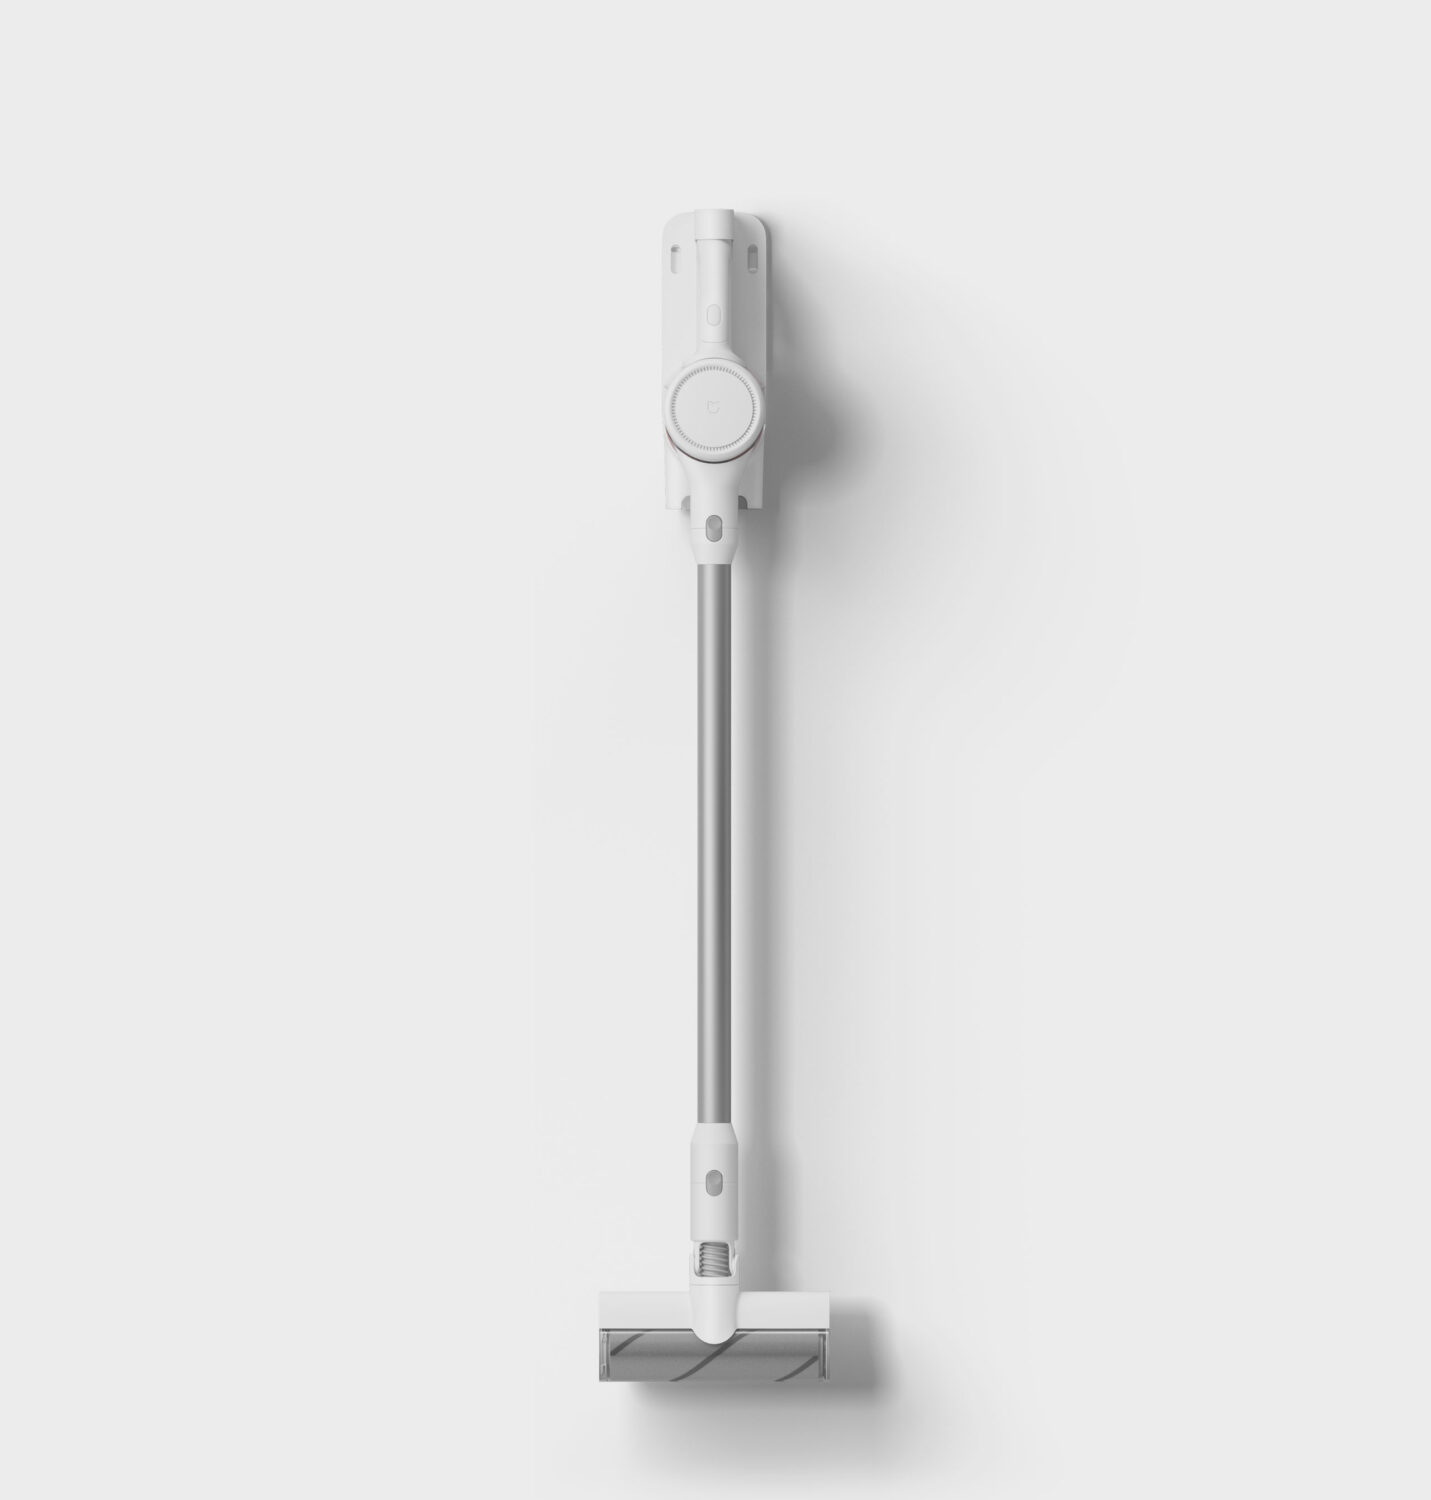 Xiaomi Mi Handheld Vacuum Cleaner Black Friday